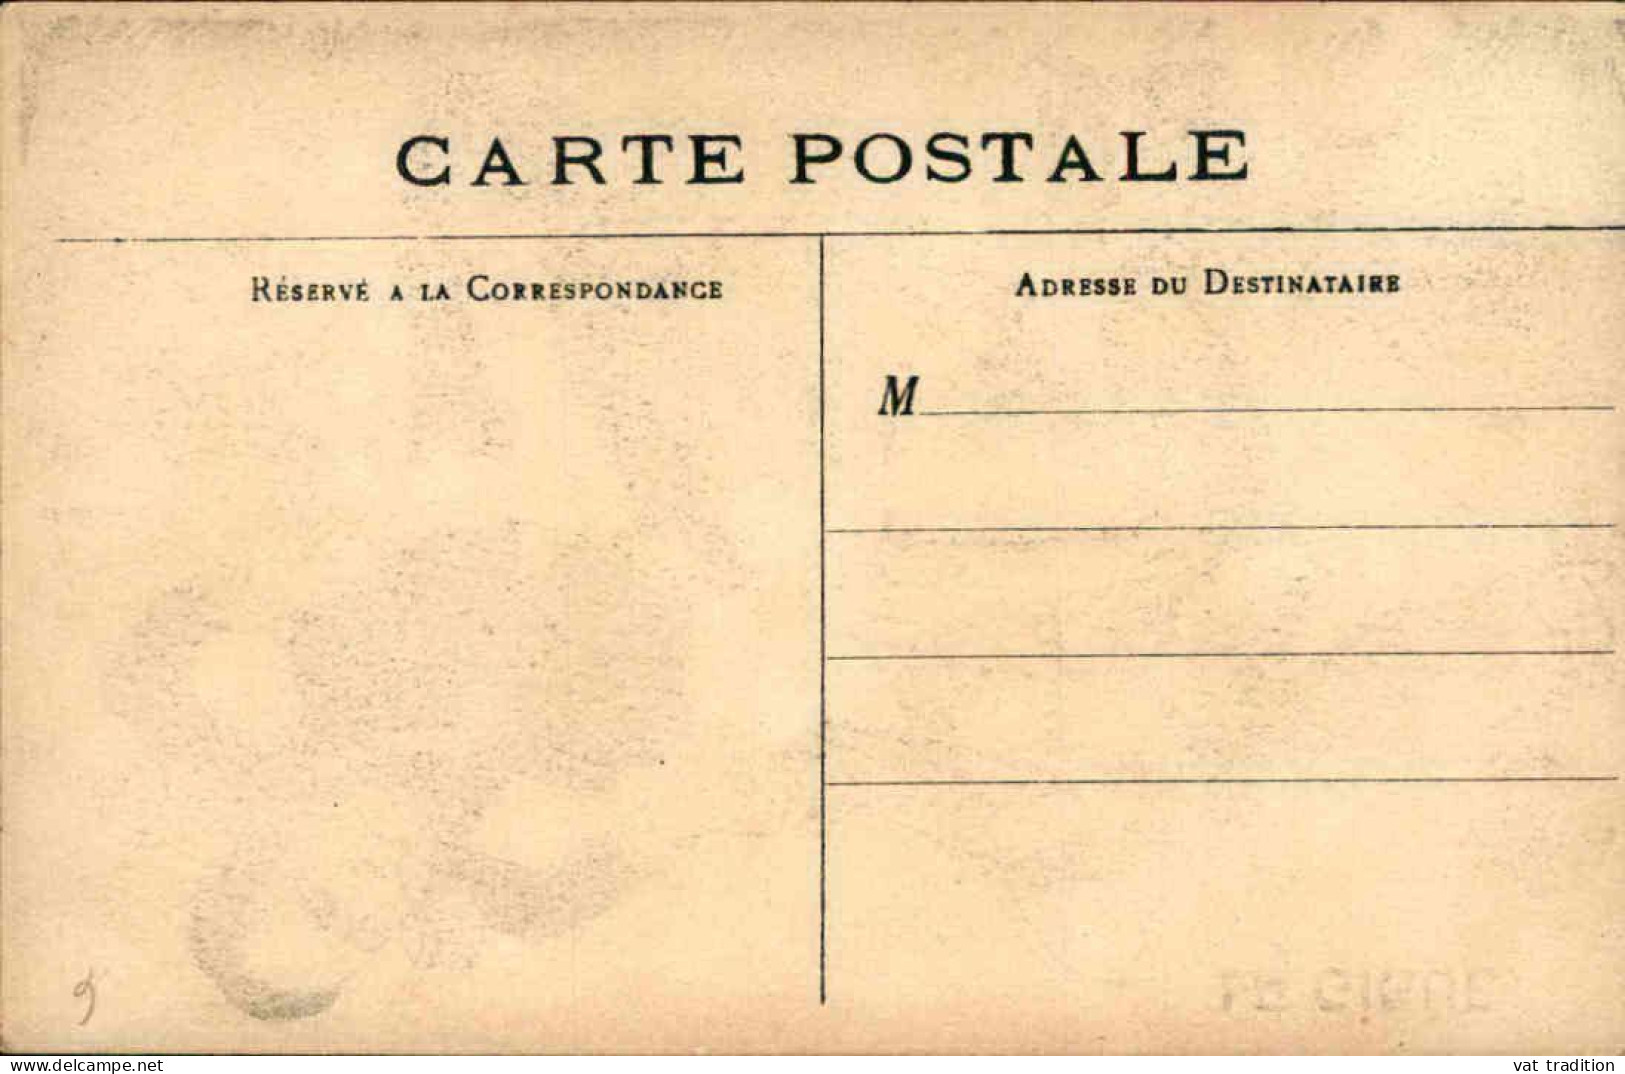 POLITIQUE - Carte Postale - La Gigue - L 152214 - Sátiras